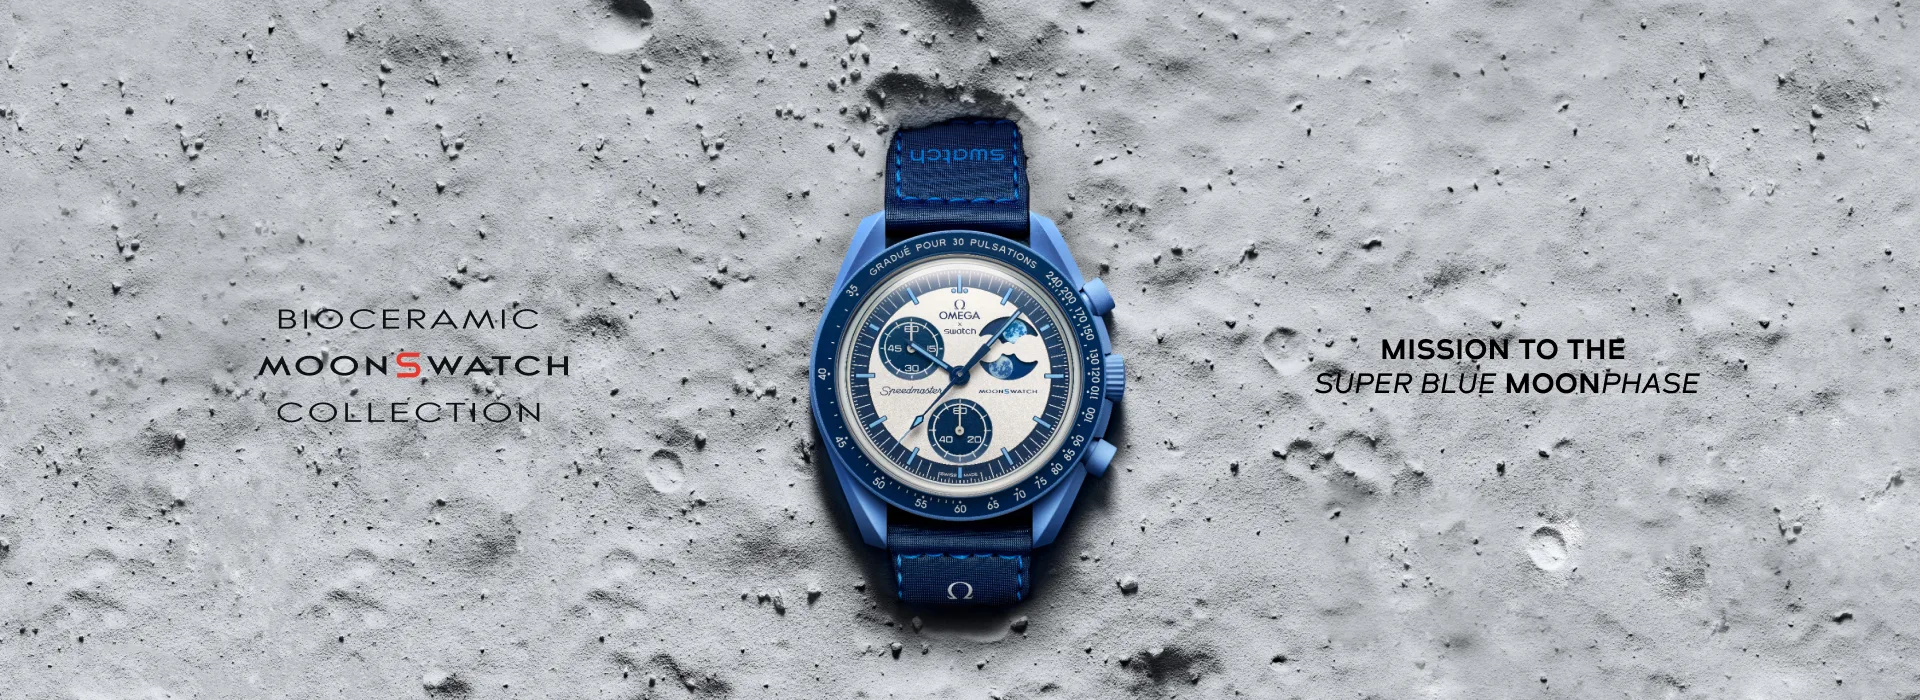 นาฬิกา Bioceramic MoonSwatch MISSION TO THE SUPER BLUE MOONPHASE เป็นการฉลองให้กับปรากฏการณ์ซูเปอร์บลูมูนแรกแห่งปี และบรรยากาศของการสังสรรค์ช่วงฤดูร้อนในยุโรป